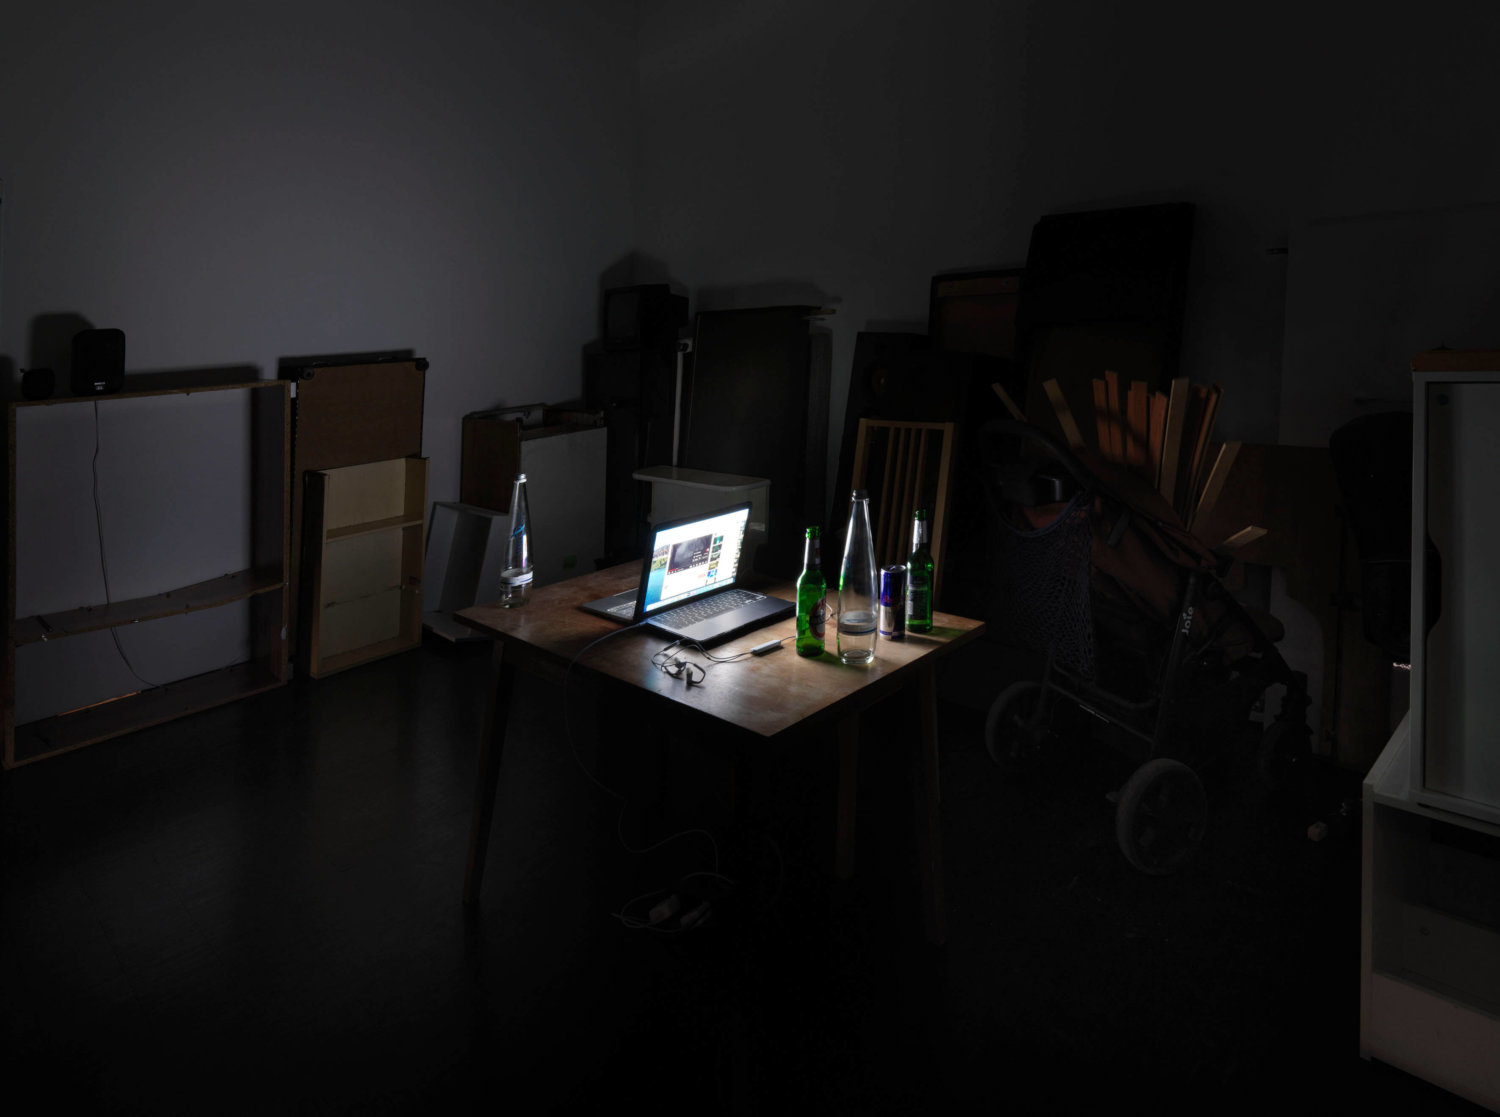 Ein dunkler Raum, der durch das Display eines Laptops erleuchtet wird, Flaschen stehen drumherum auf einem Tisch